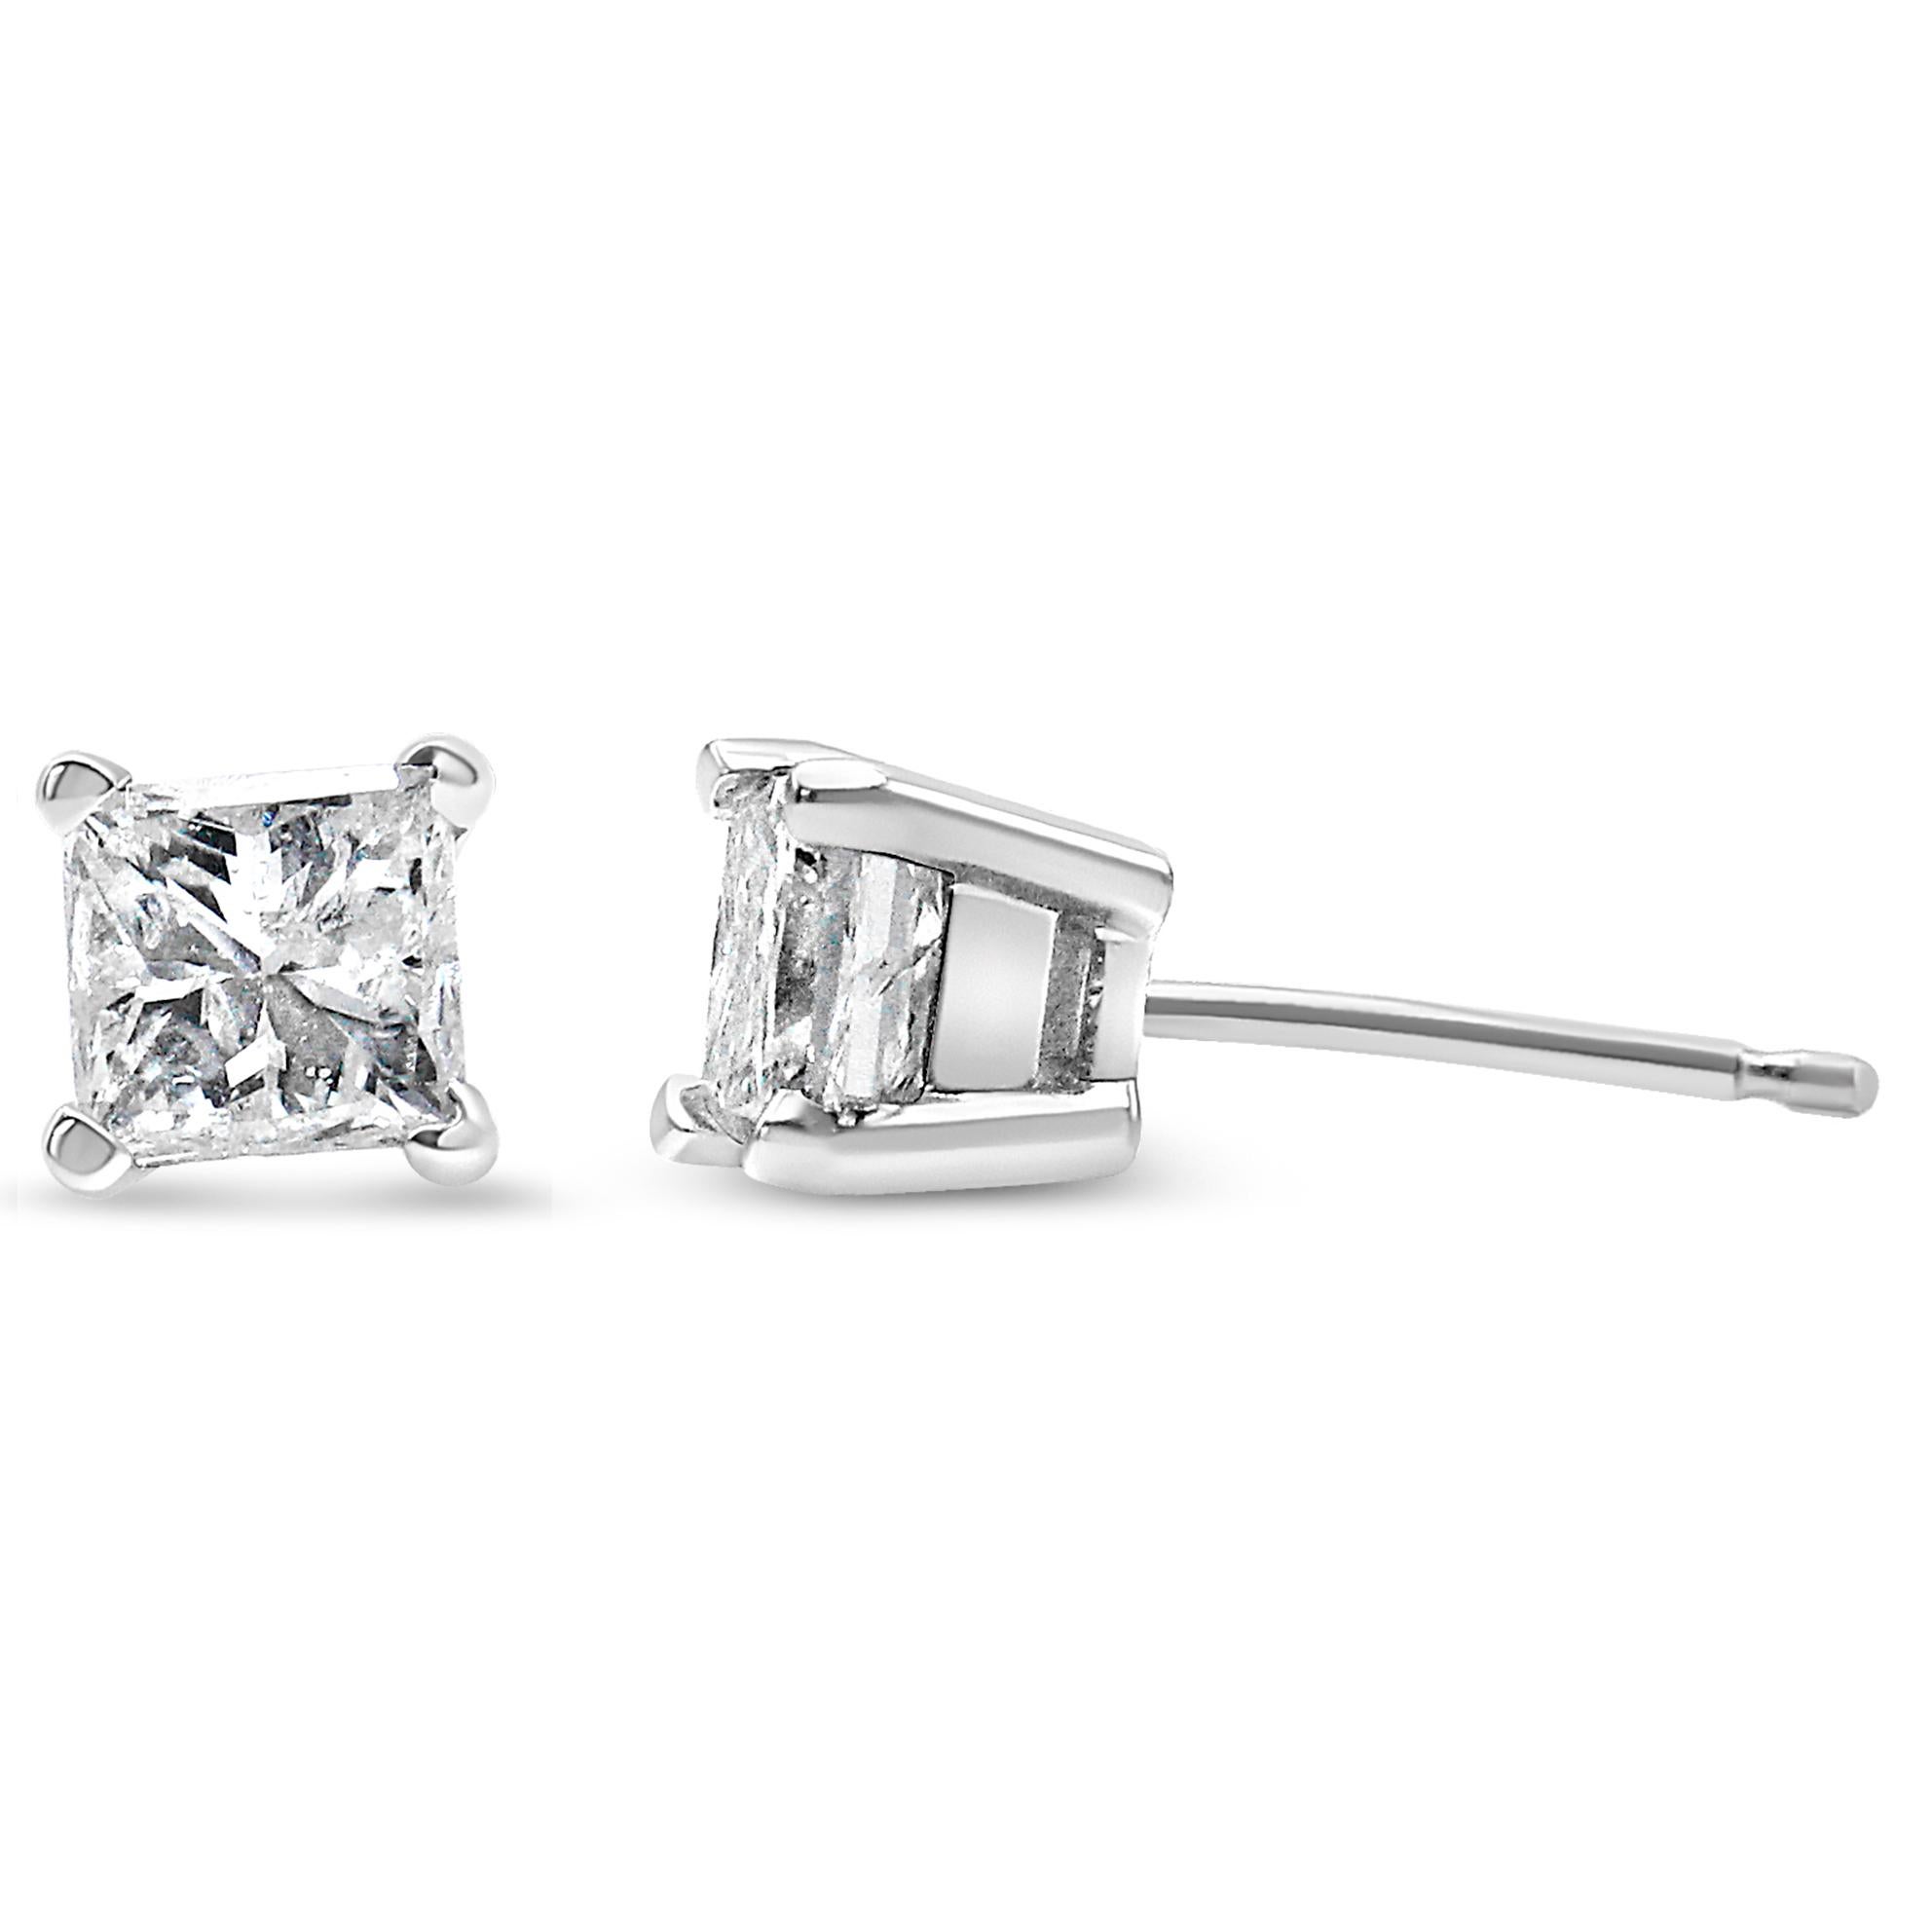 1 4 carat princess cut diamond earrings